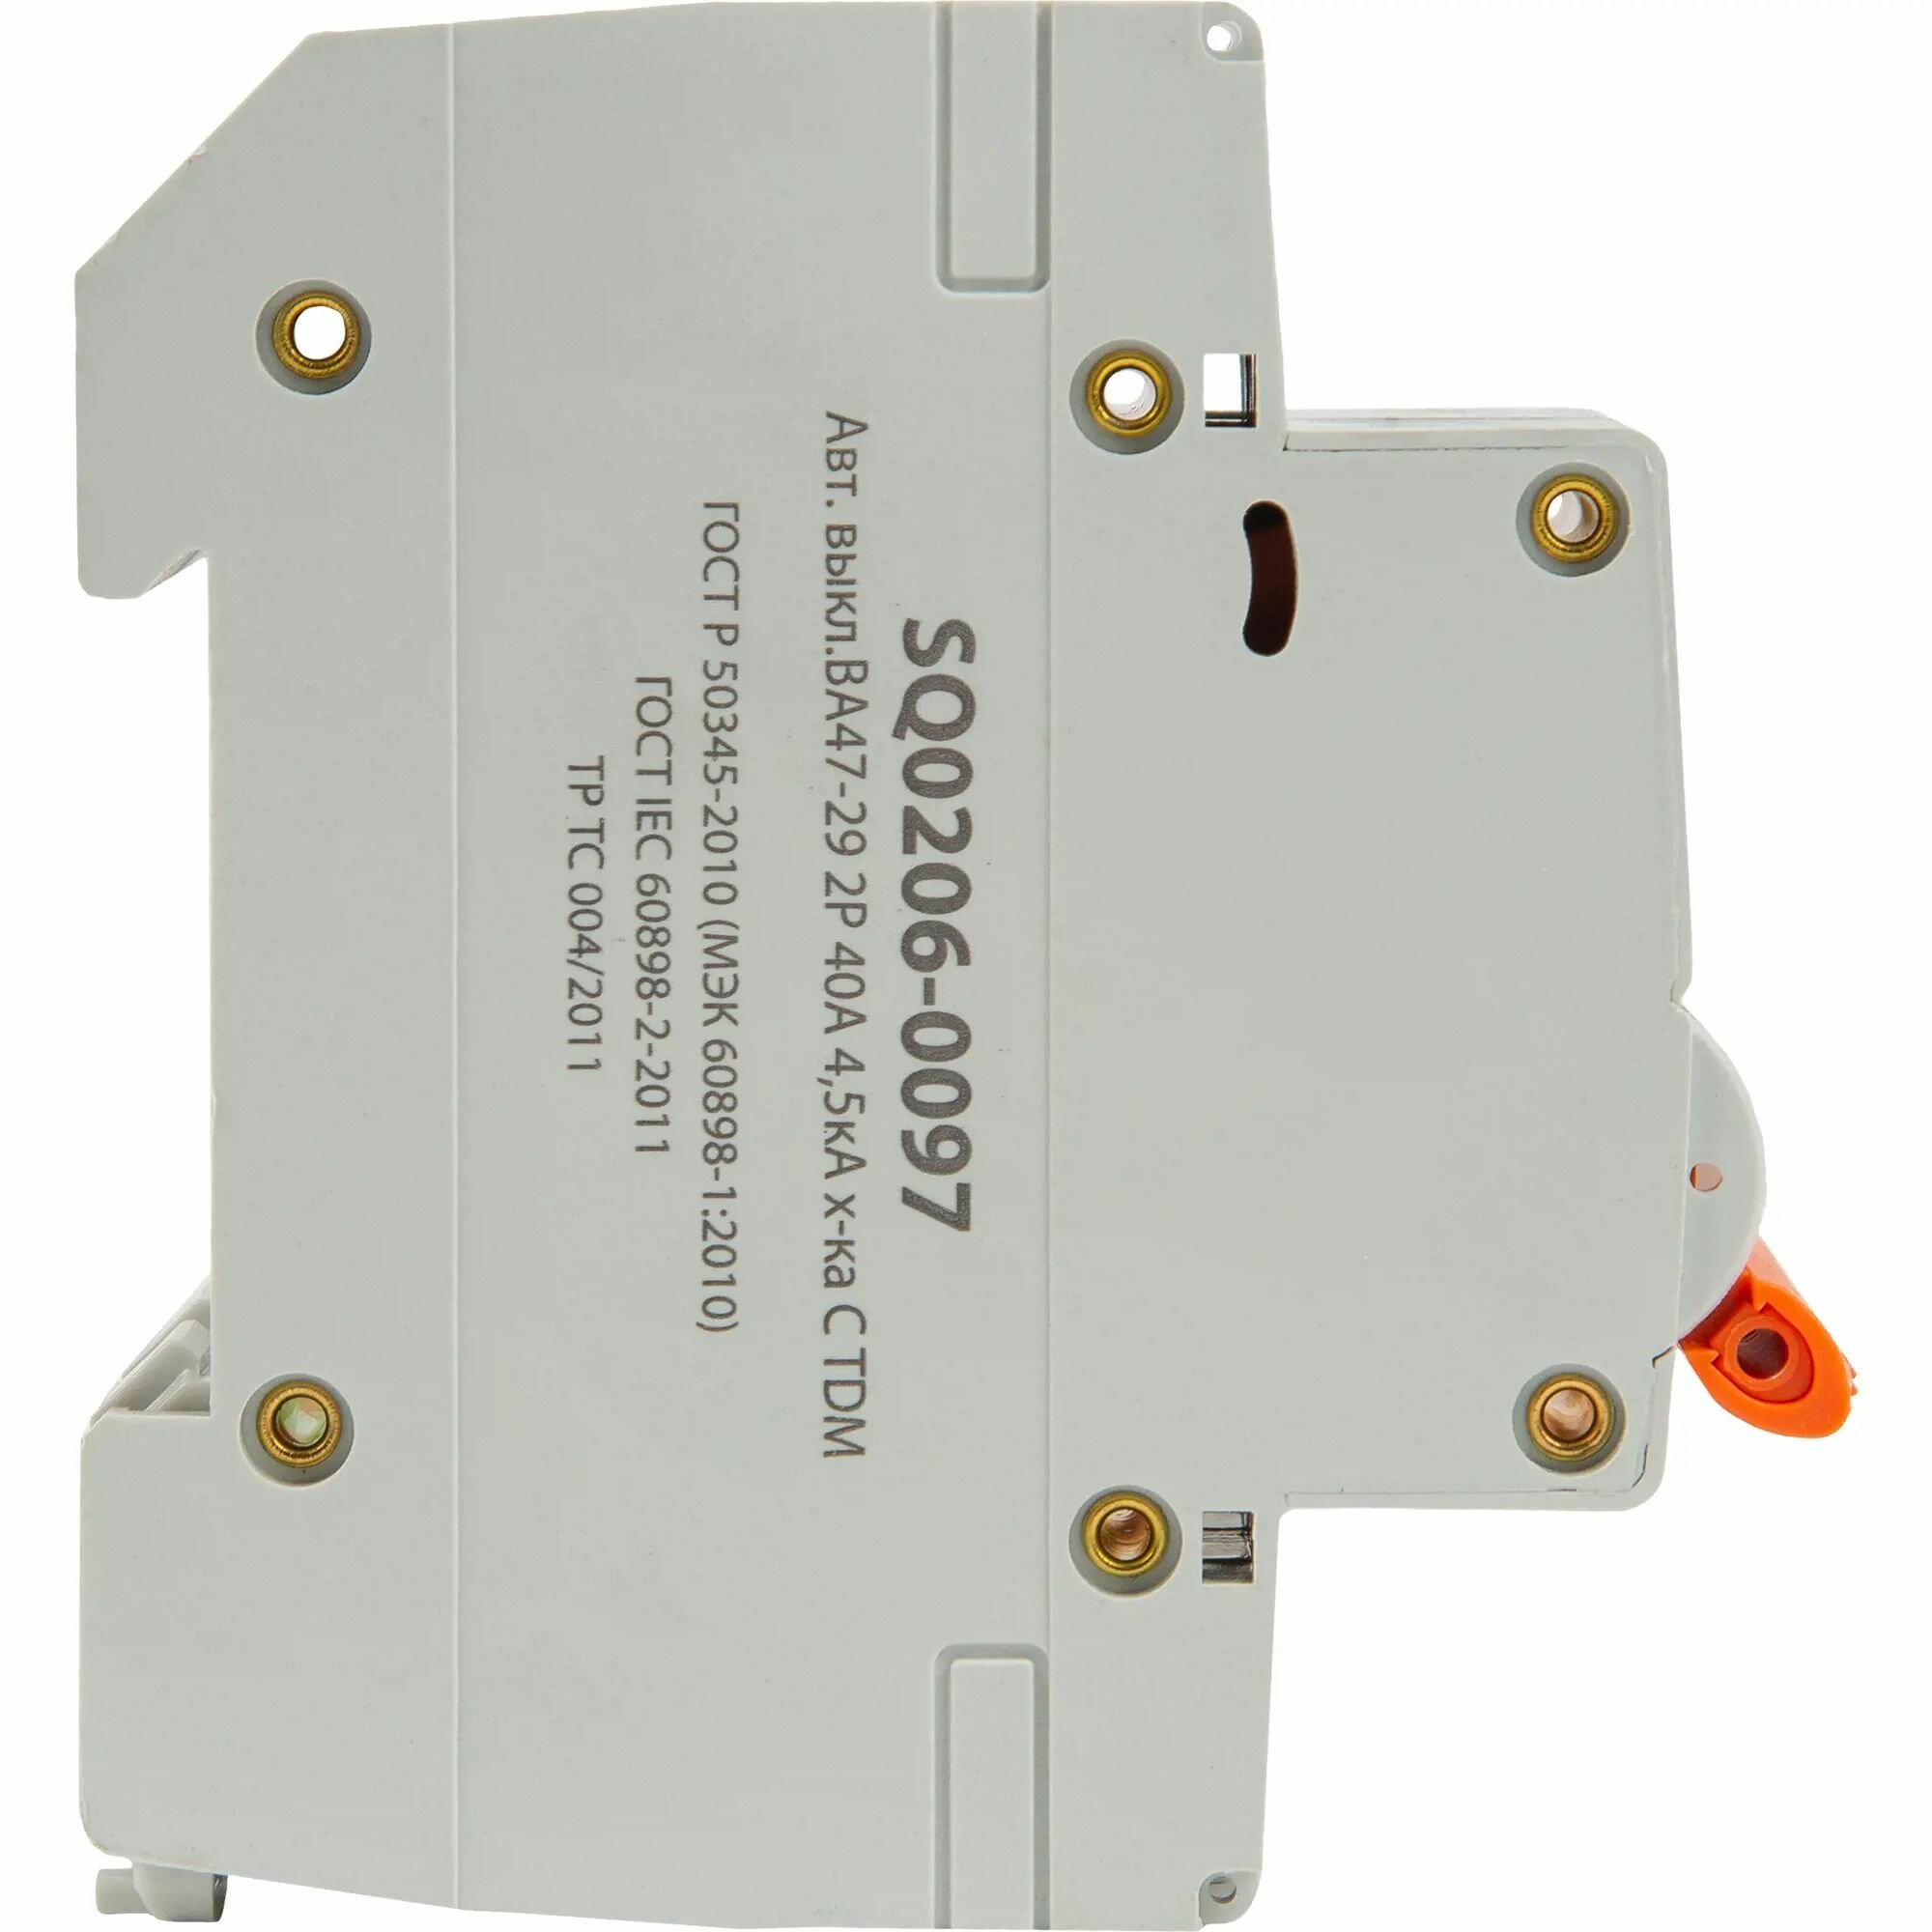 Автоматический выключатель TDM ELECTRIC ВА 47-29 (C) 4,5kA 40 А